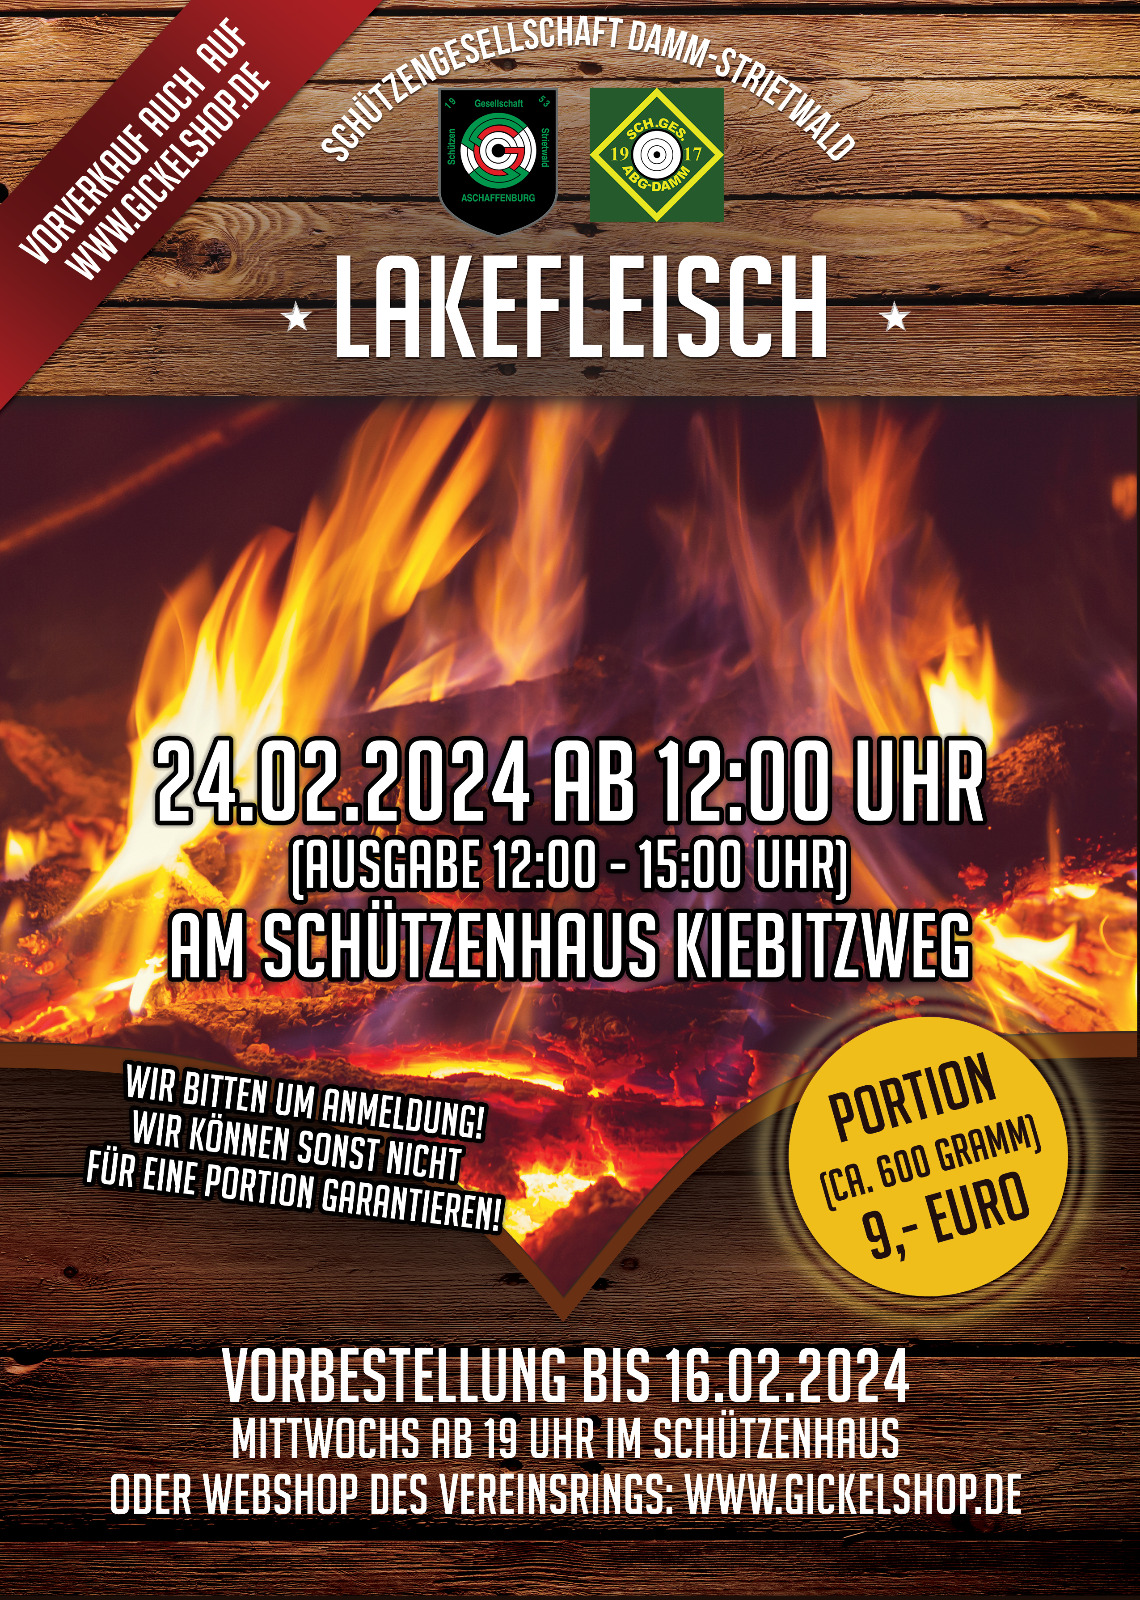 Lakefleisch Essen 2024 im Schützenhaus Kiebitzweg. 24.2.2024 ab 12 Uhr. Bitte vorher anmelden. Vorbestellung bis 16.2.2024